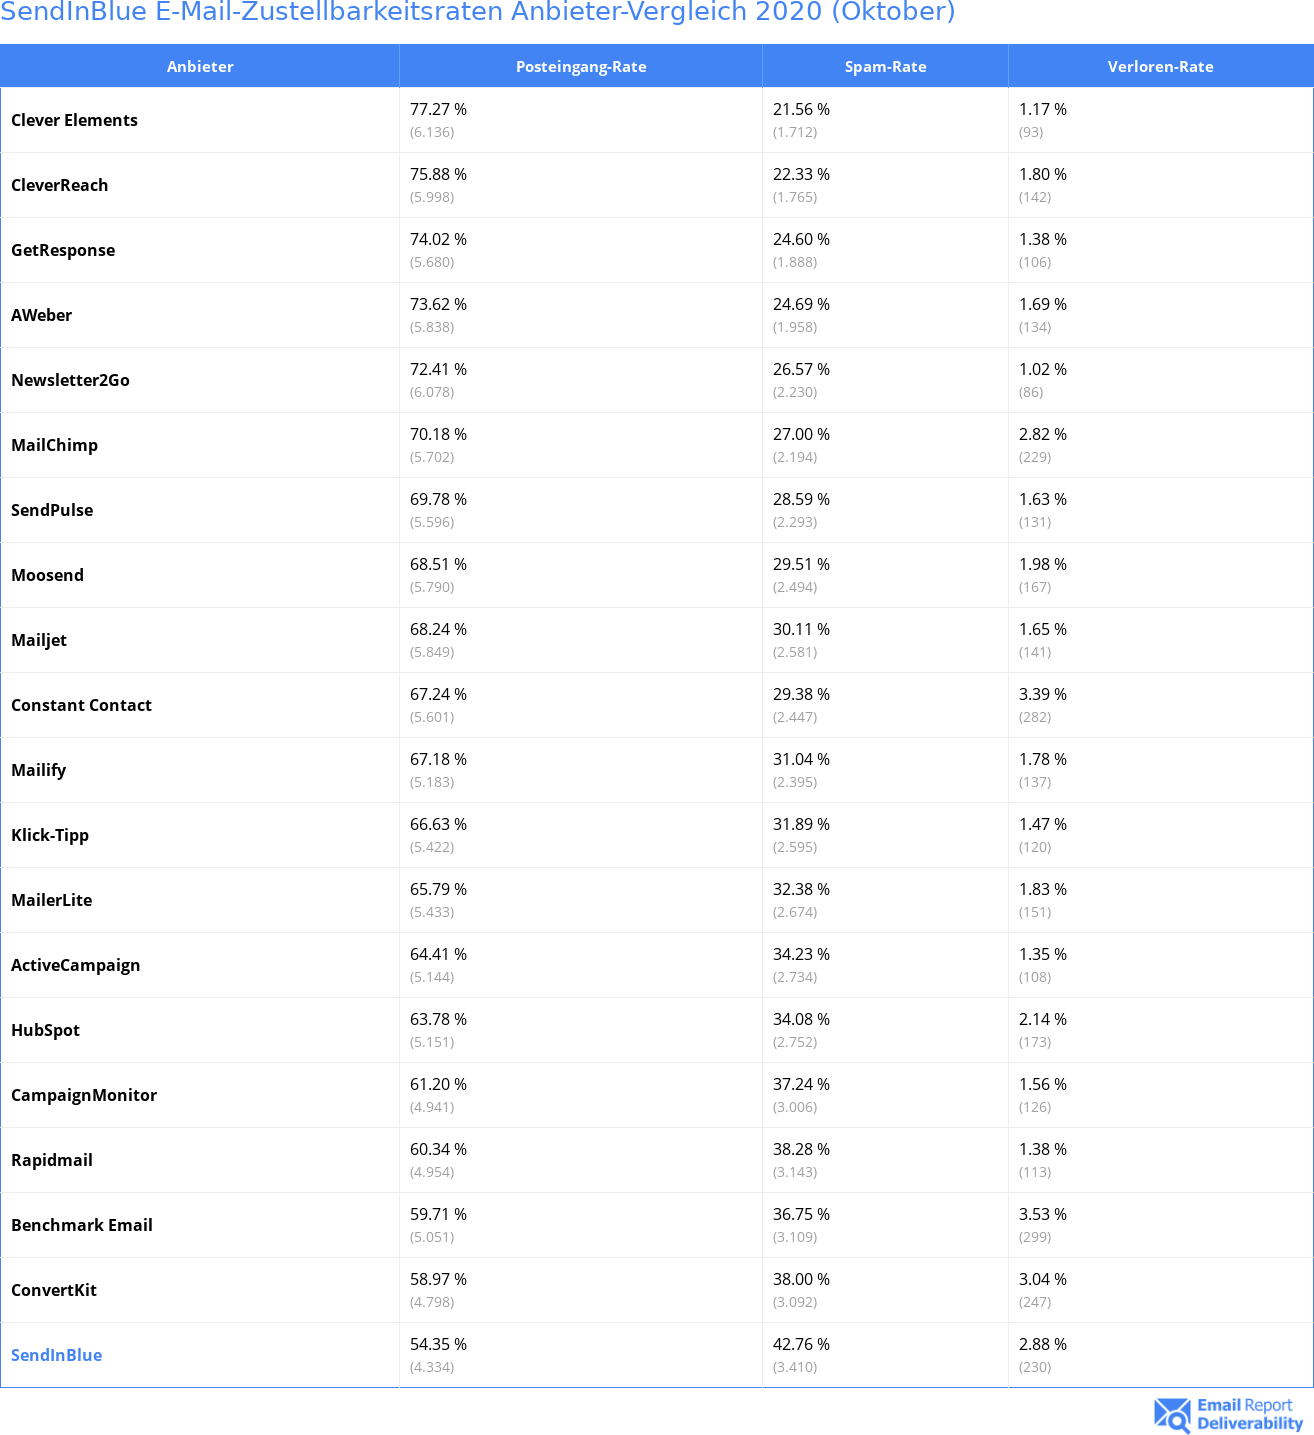 SendInBlue E-Mail-Zustellbarkeitsraten Anbieter-Vergleich 2020 (Oktober)